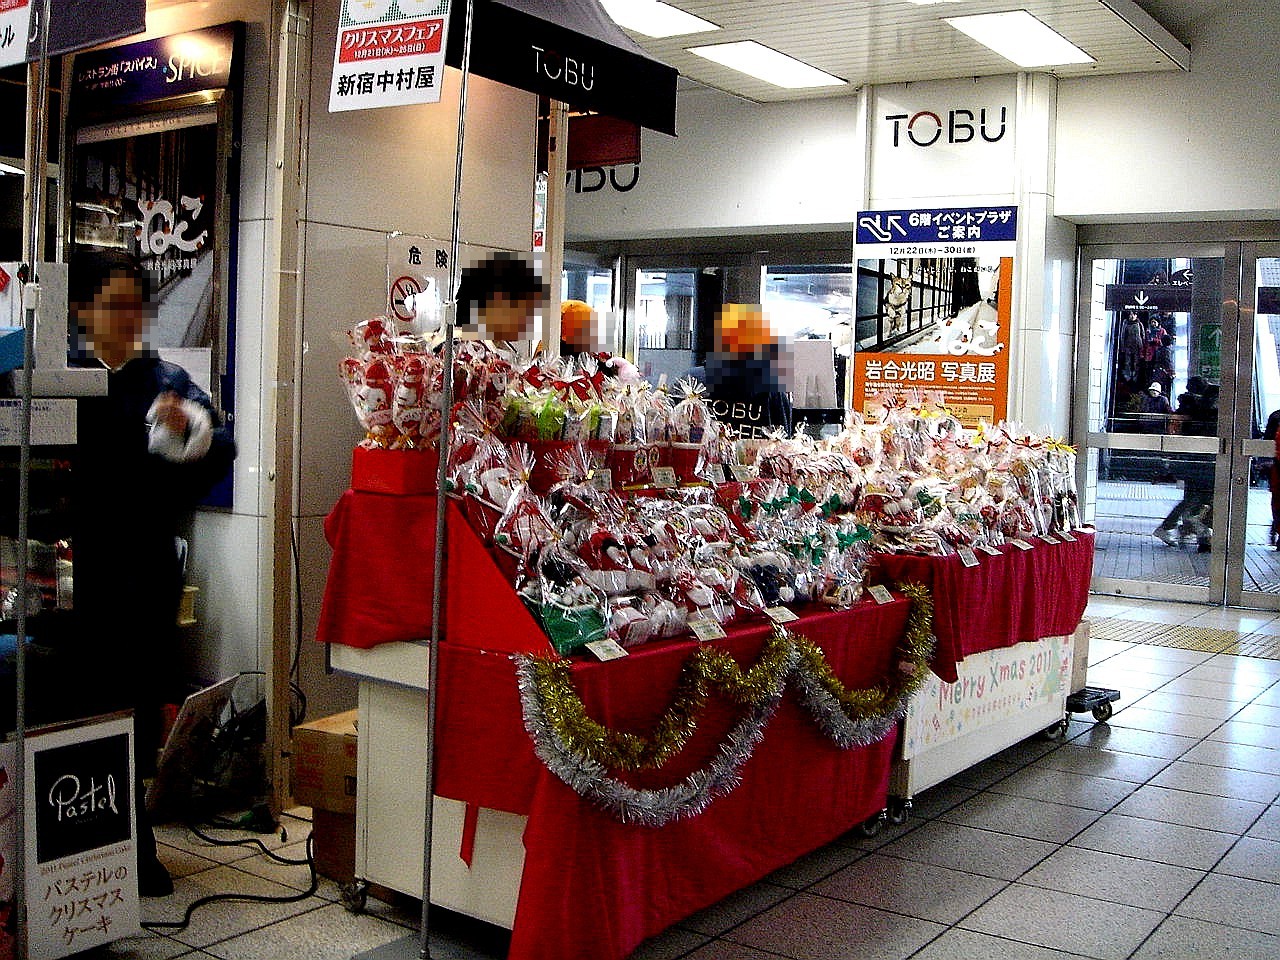 ハッピークリスマス11 船橋駅東武百貨店前のクリスマスケーキ販売 35 ビビット11part2